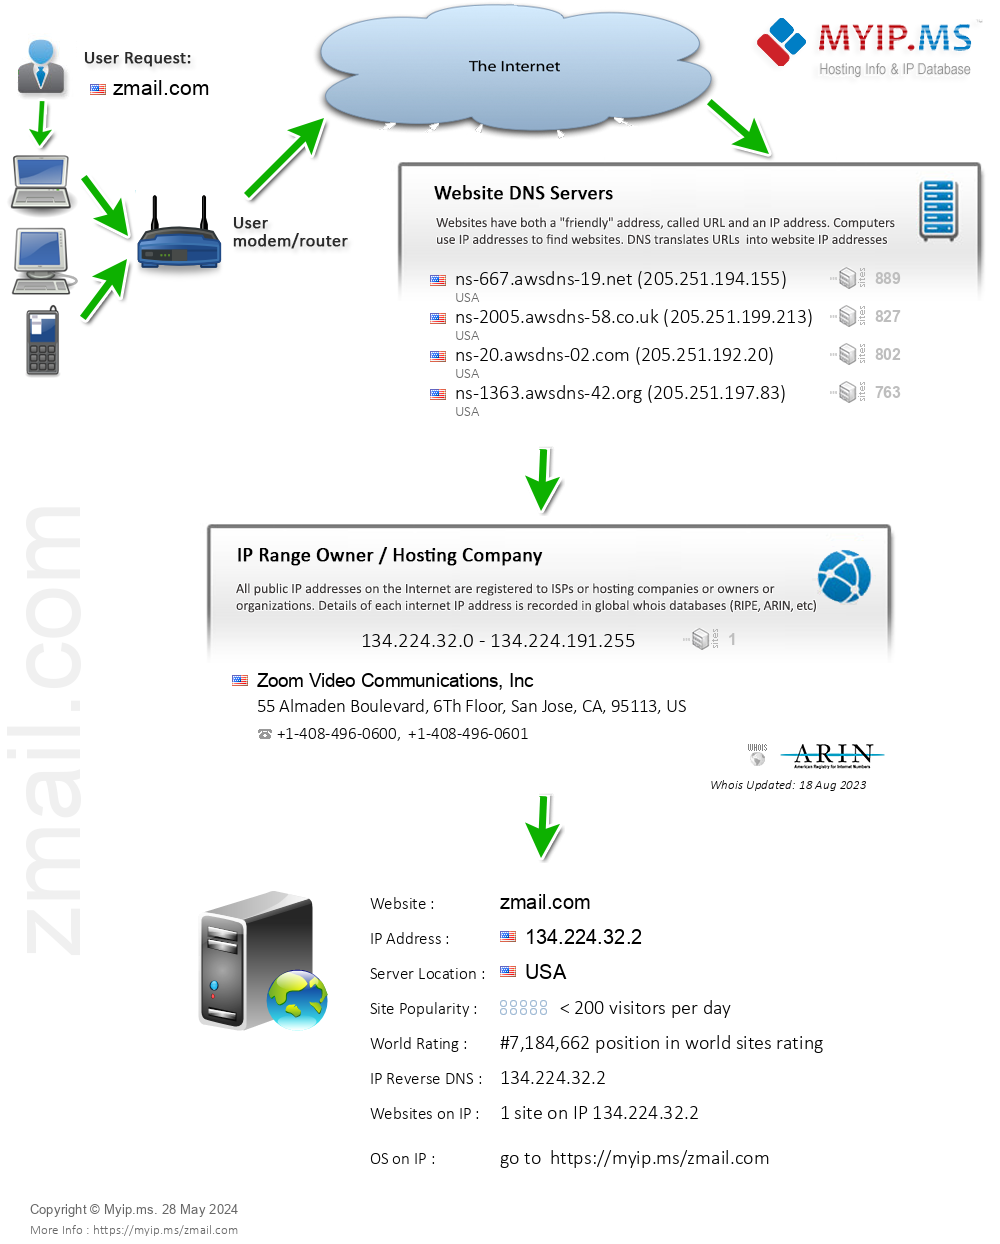 Zmail.com - Website Hosting Visual IP Diagram